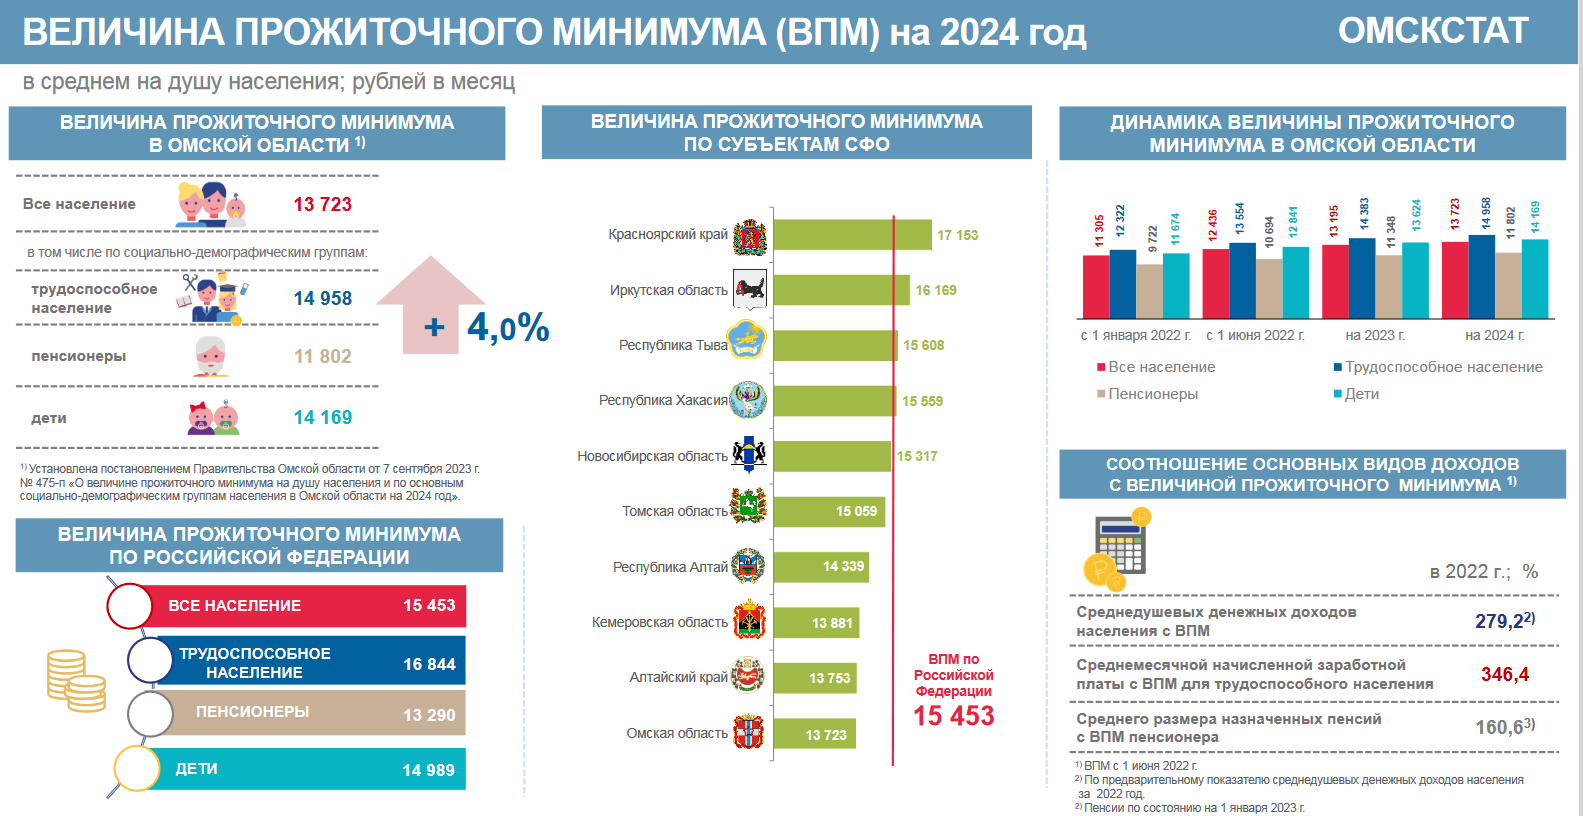 Павел Селезнев: Рост доходов и зарплат в России обгонит высокую инфляцию 2024 года